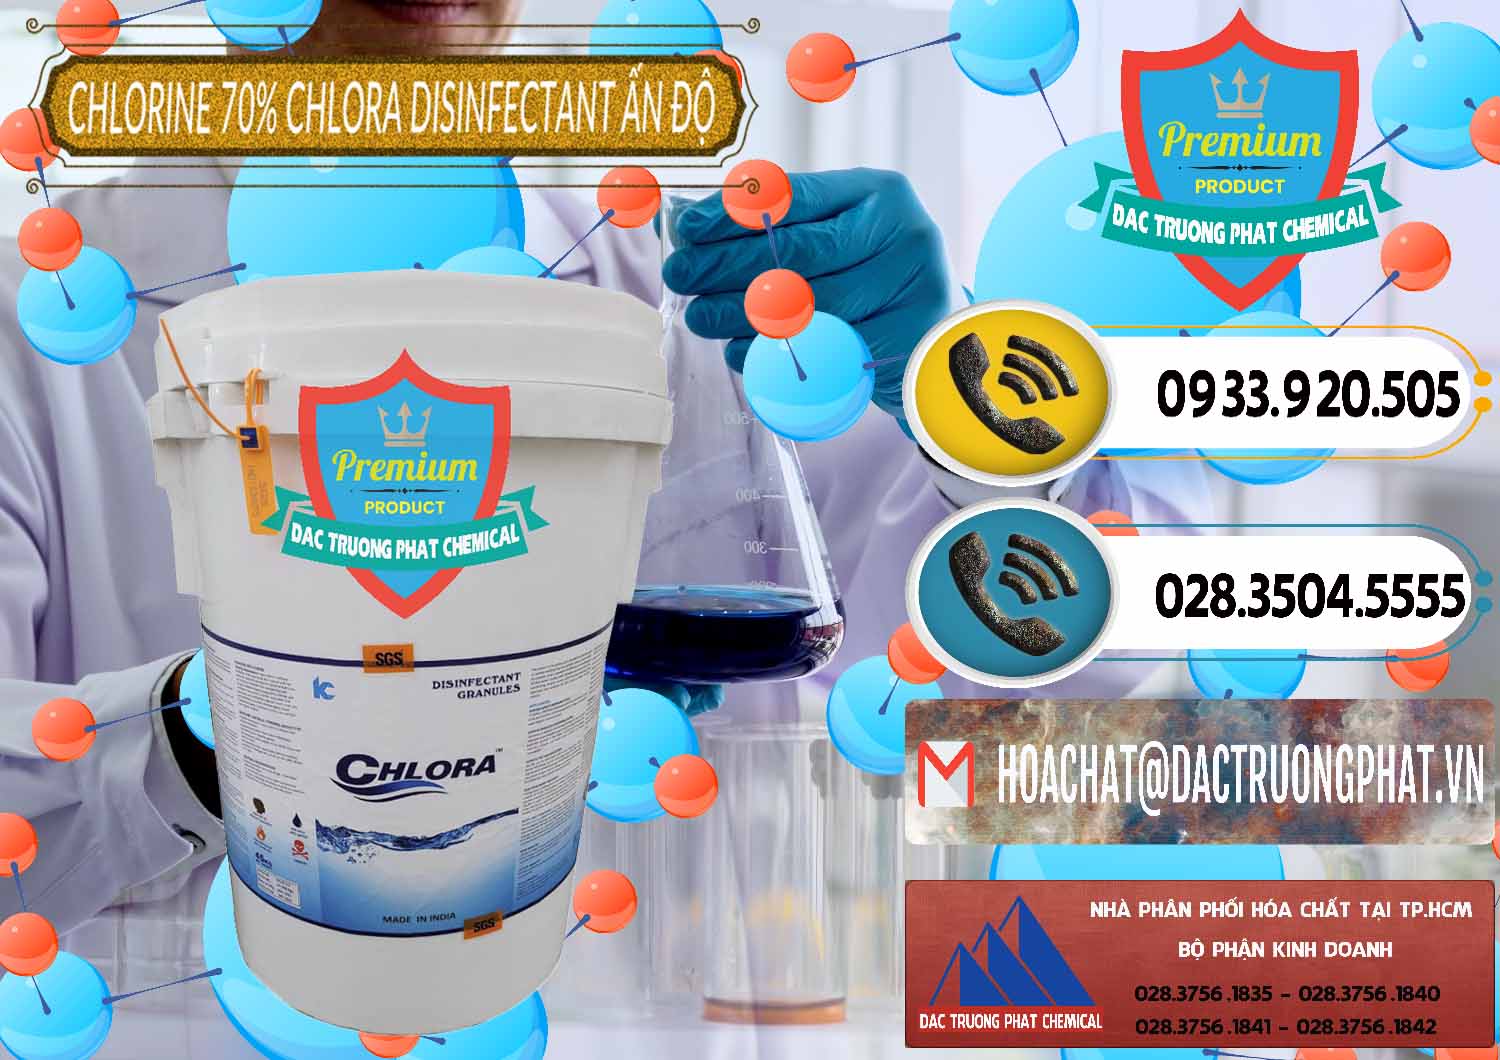 Cty kinh doanh _ bán Chlorine – Clorin 70% Chlora Disinfectant Ấn Độ India - 0213 - Cty cung cấp & bán hóa chất tại TP.HCM - hoachatdetnhuom.vn